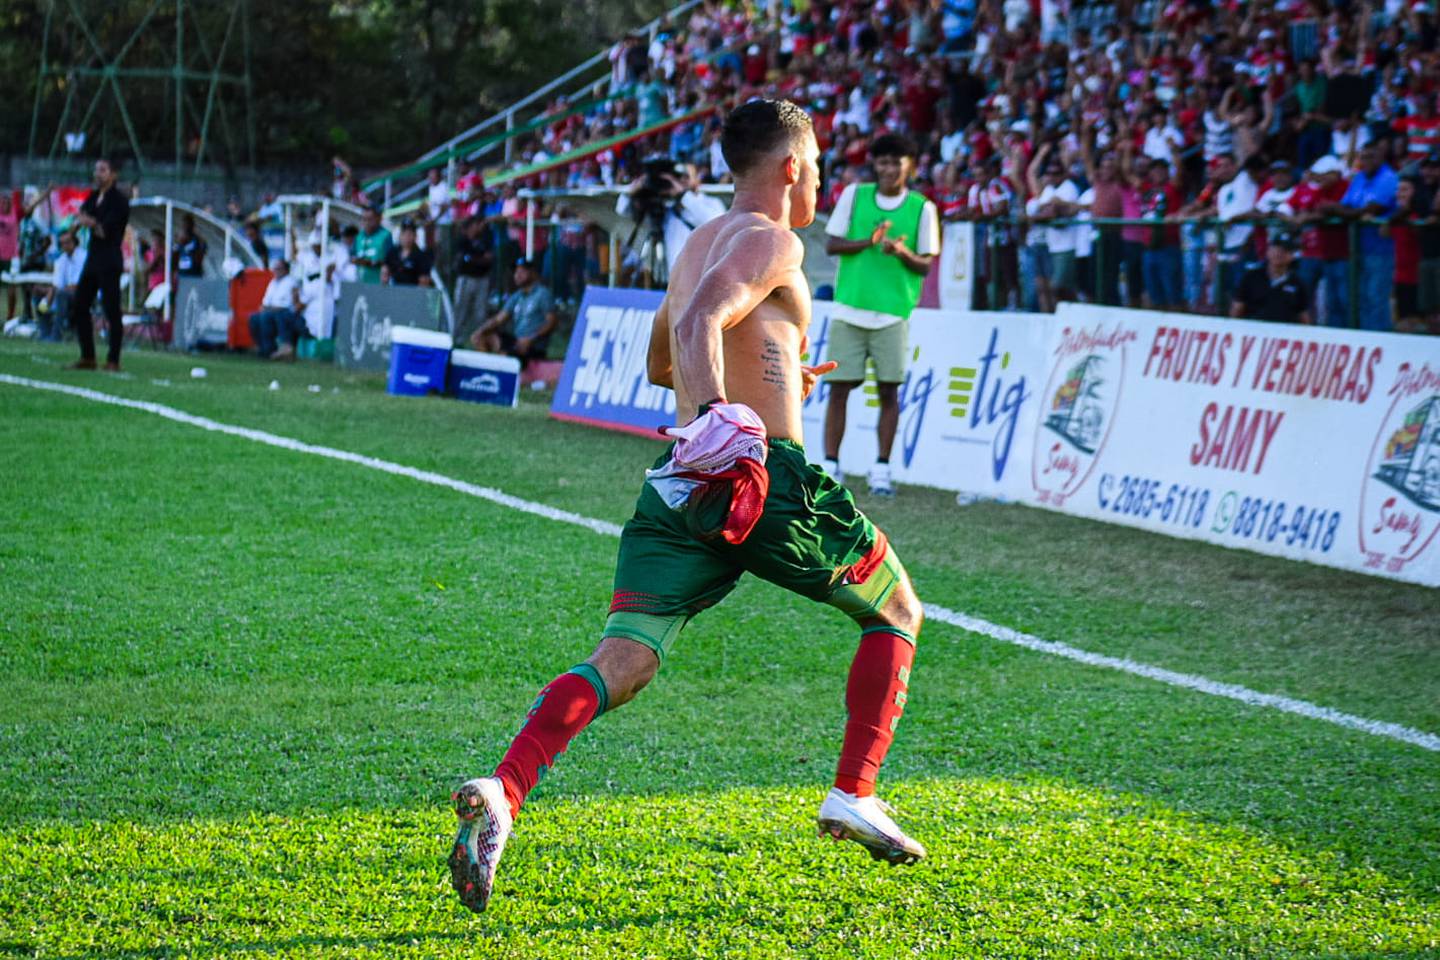 Joseph Bolaños enloqueció al convertir el gol del triunfo de Guanacasteca contra Grecia. Por quitarse la camisa, fue amonestado.